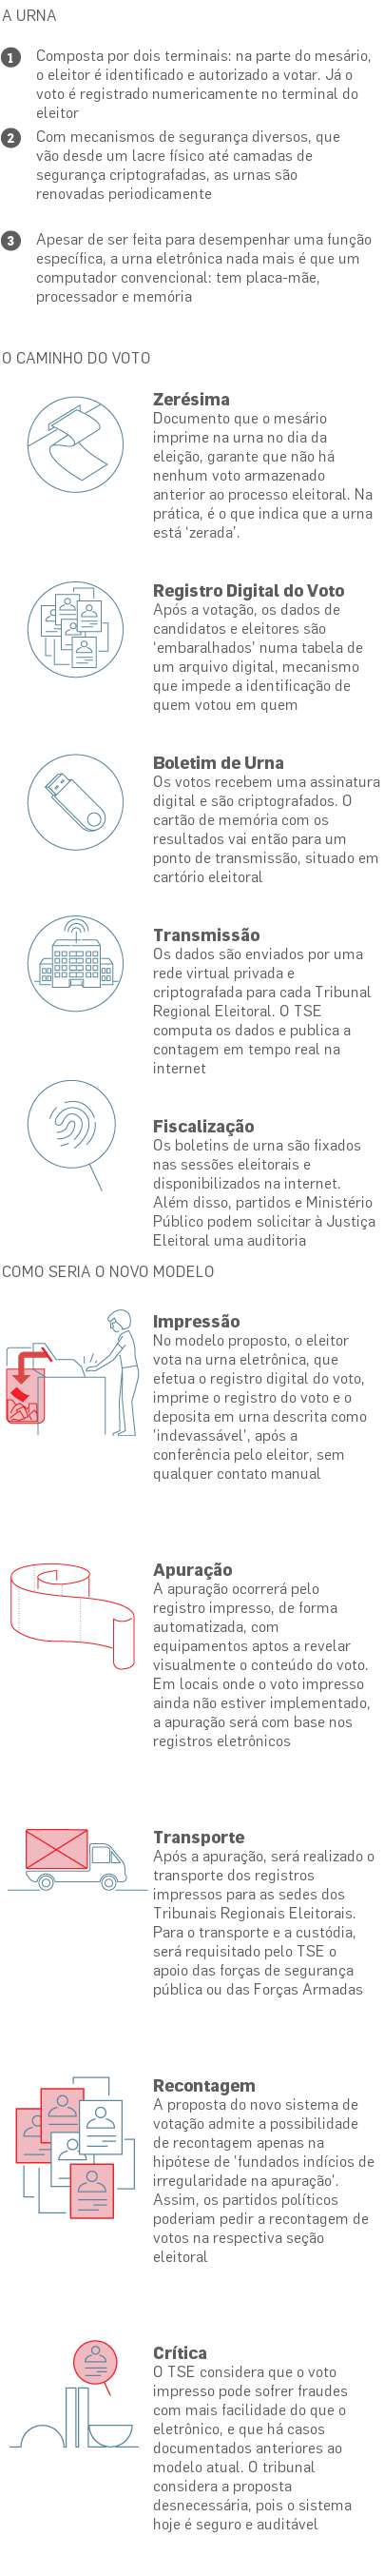 Voto Impresso Entenda A Posicao De Cada Partido E O Que Pode Mudar Na Urna Politica Estadao